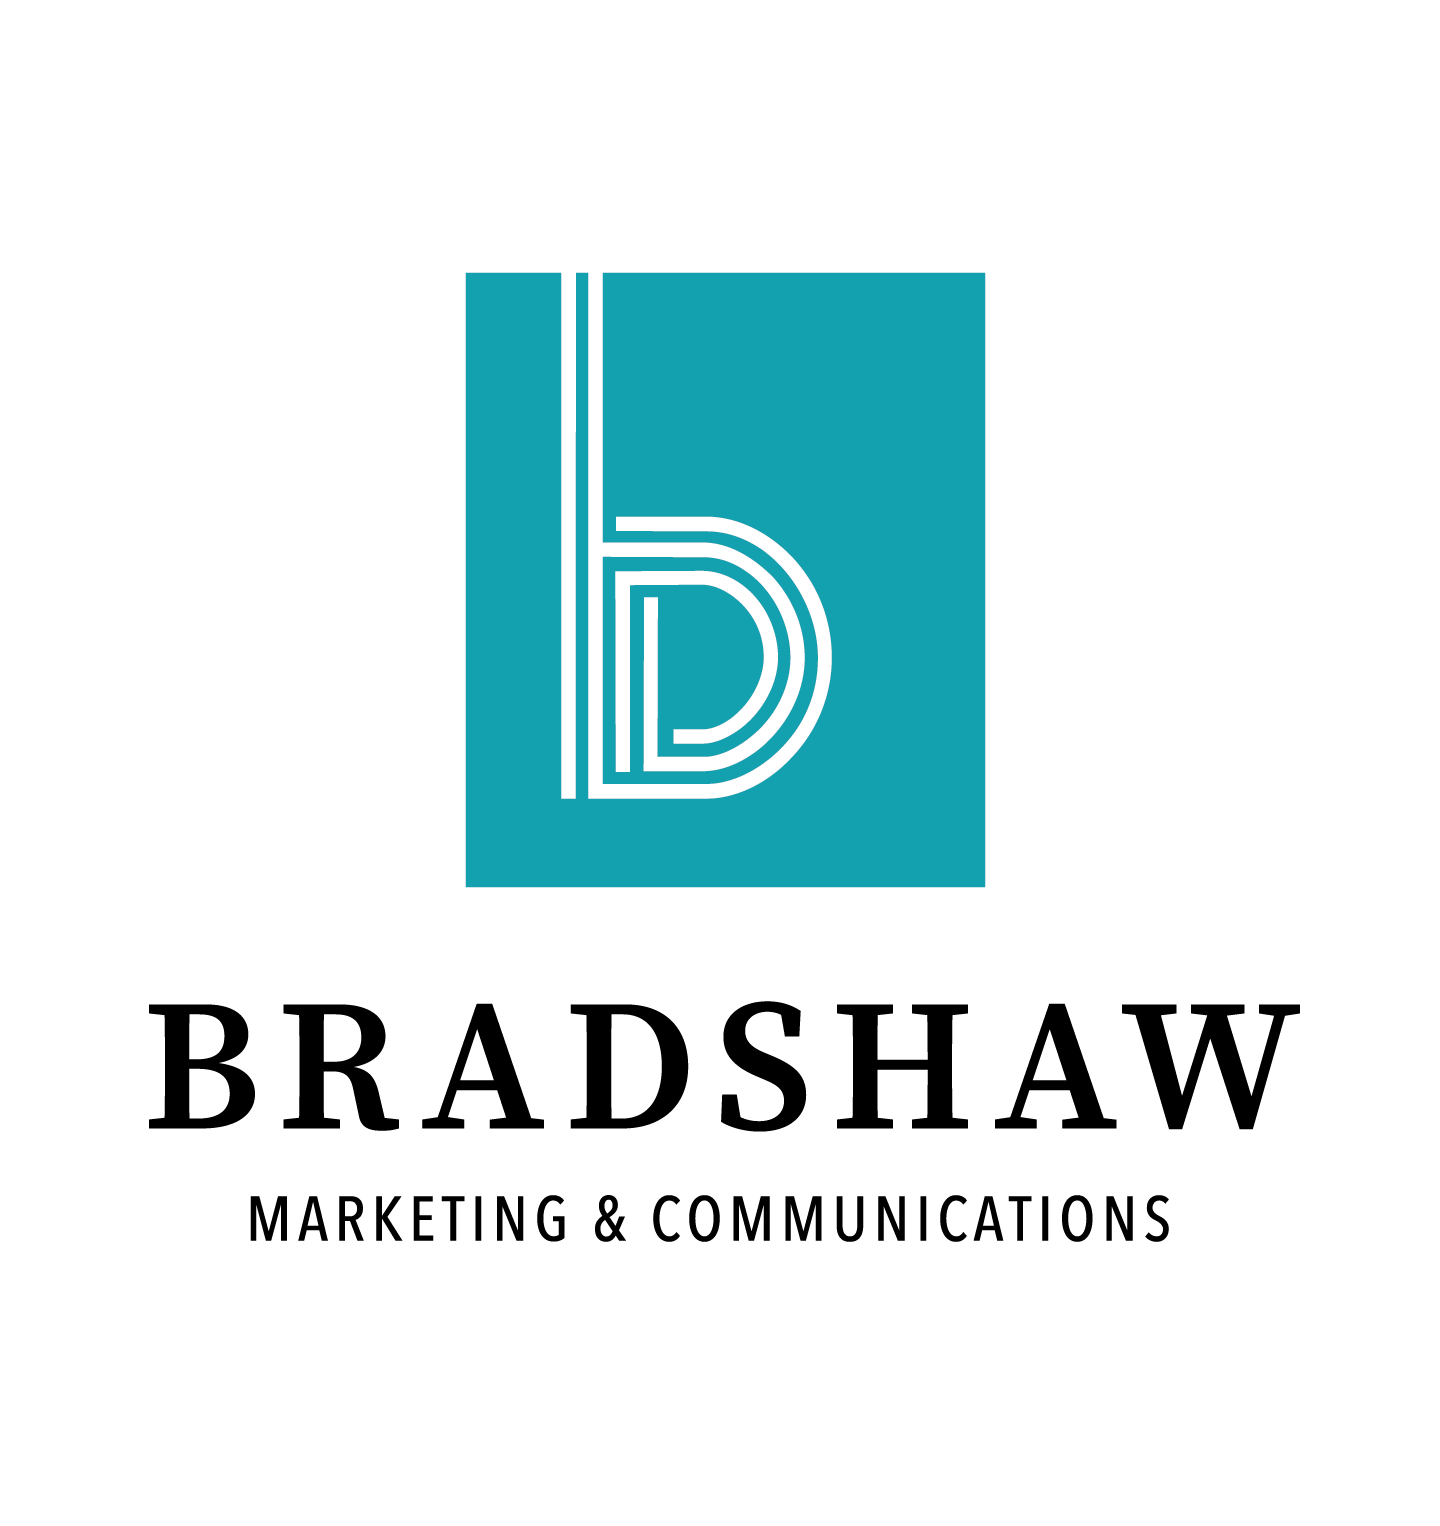 Bradshaw Marketing & Communications